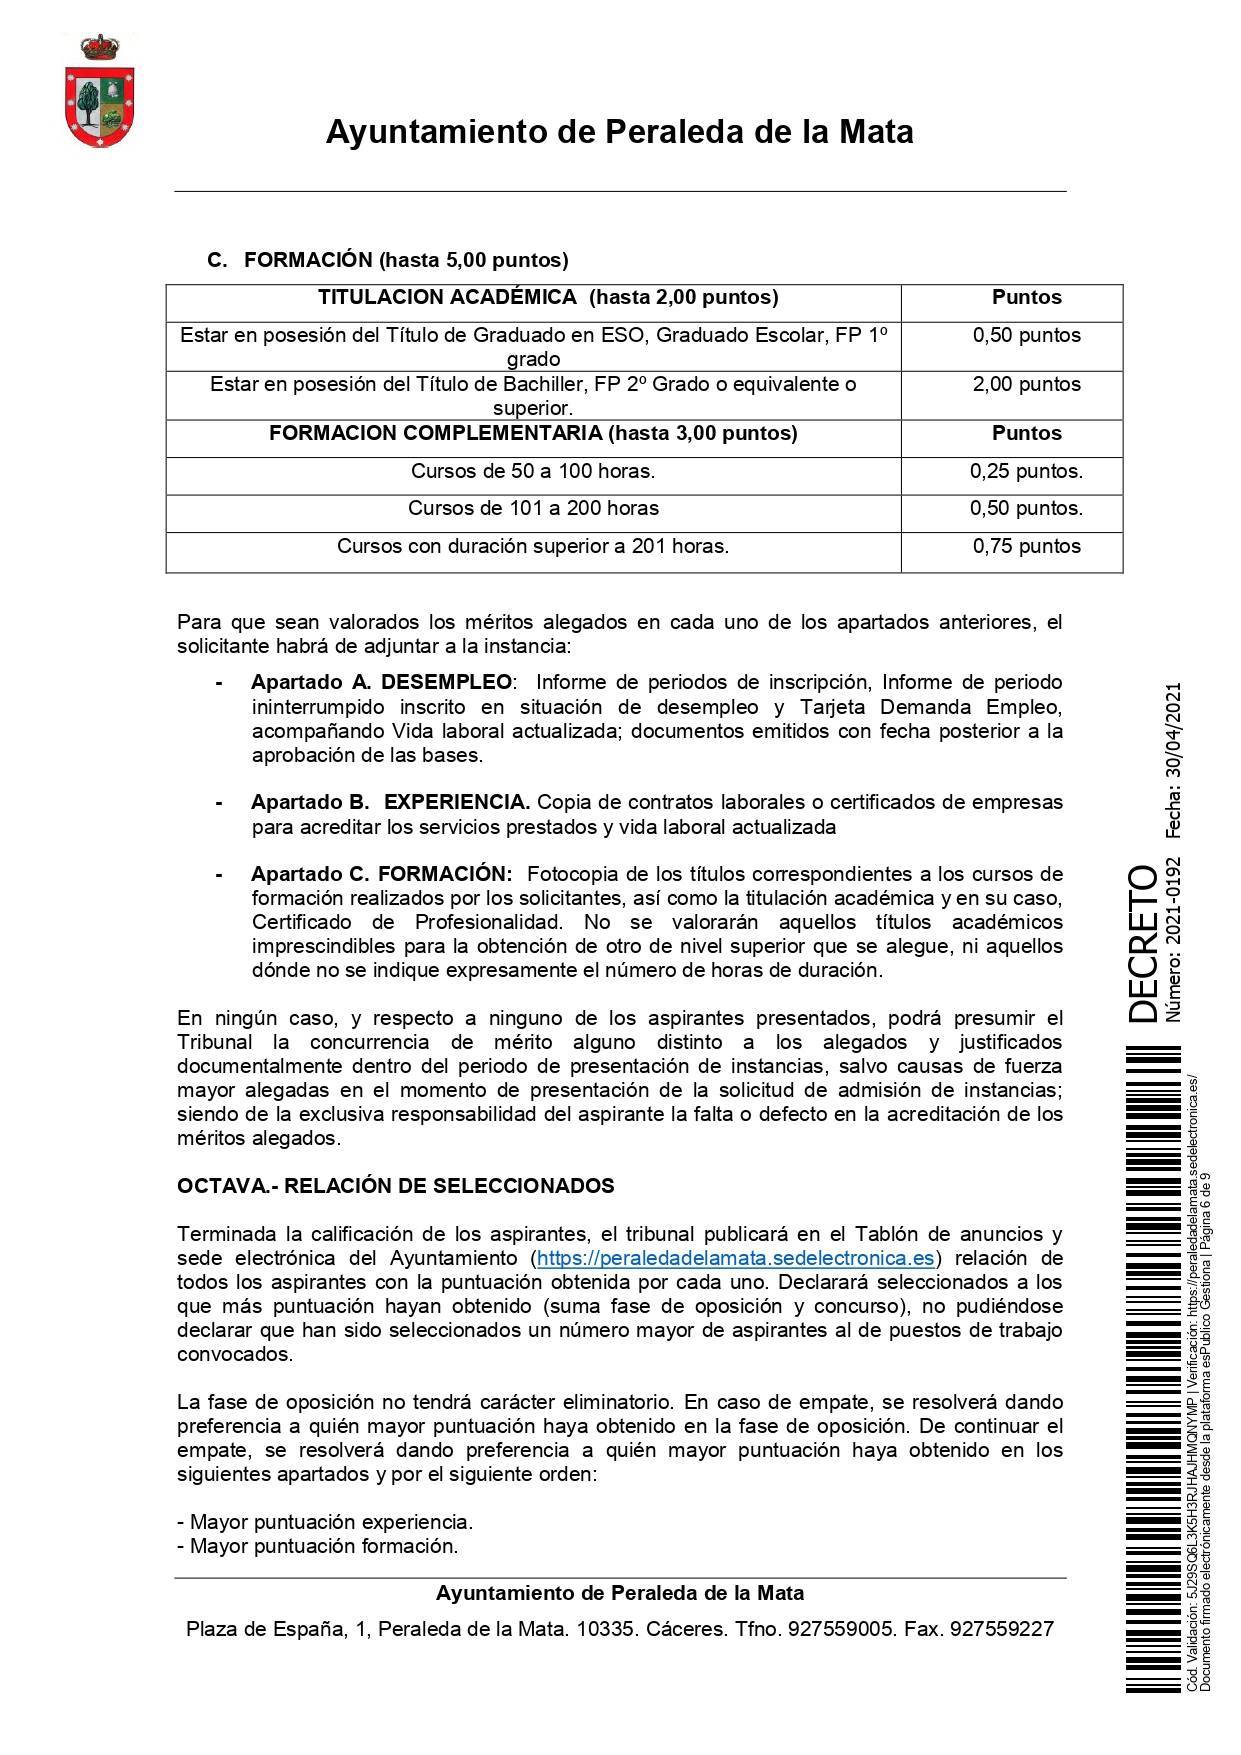 2 socorristas para la piscina municipal (2021) - Peraleda de la Mata (Cáceres) 6